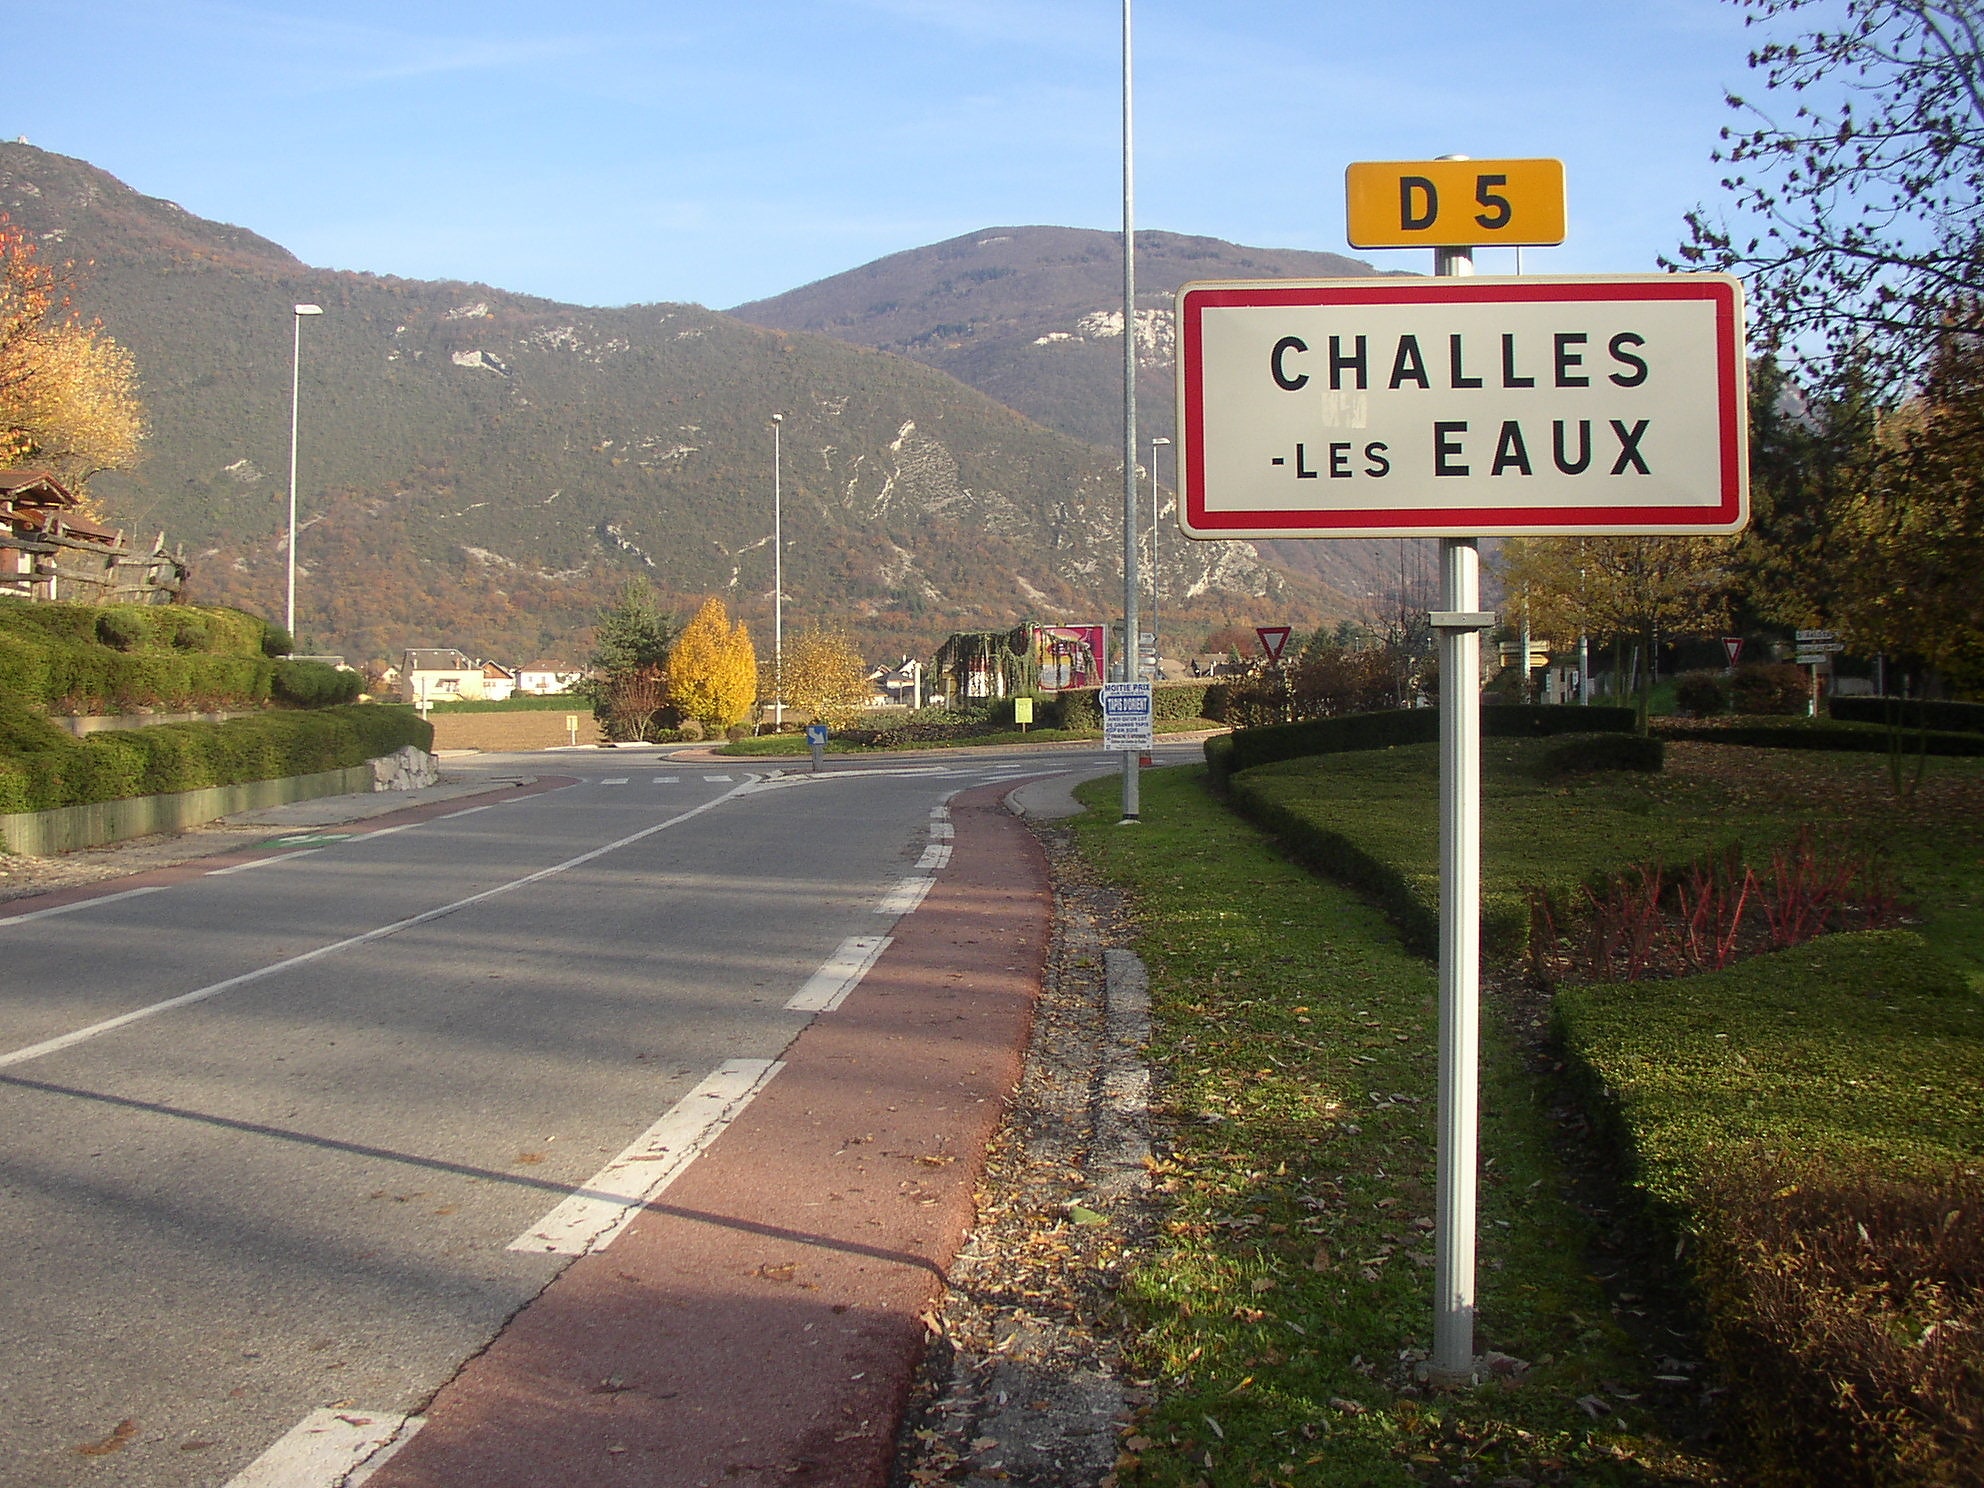 Challes-les-Eaux, France